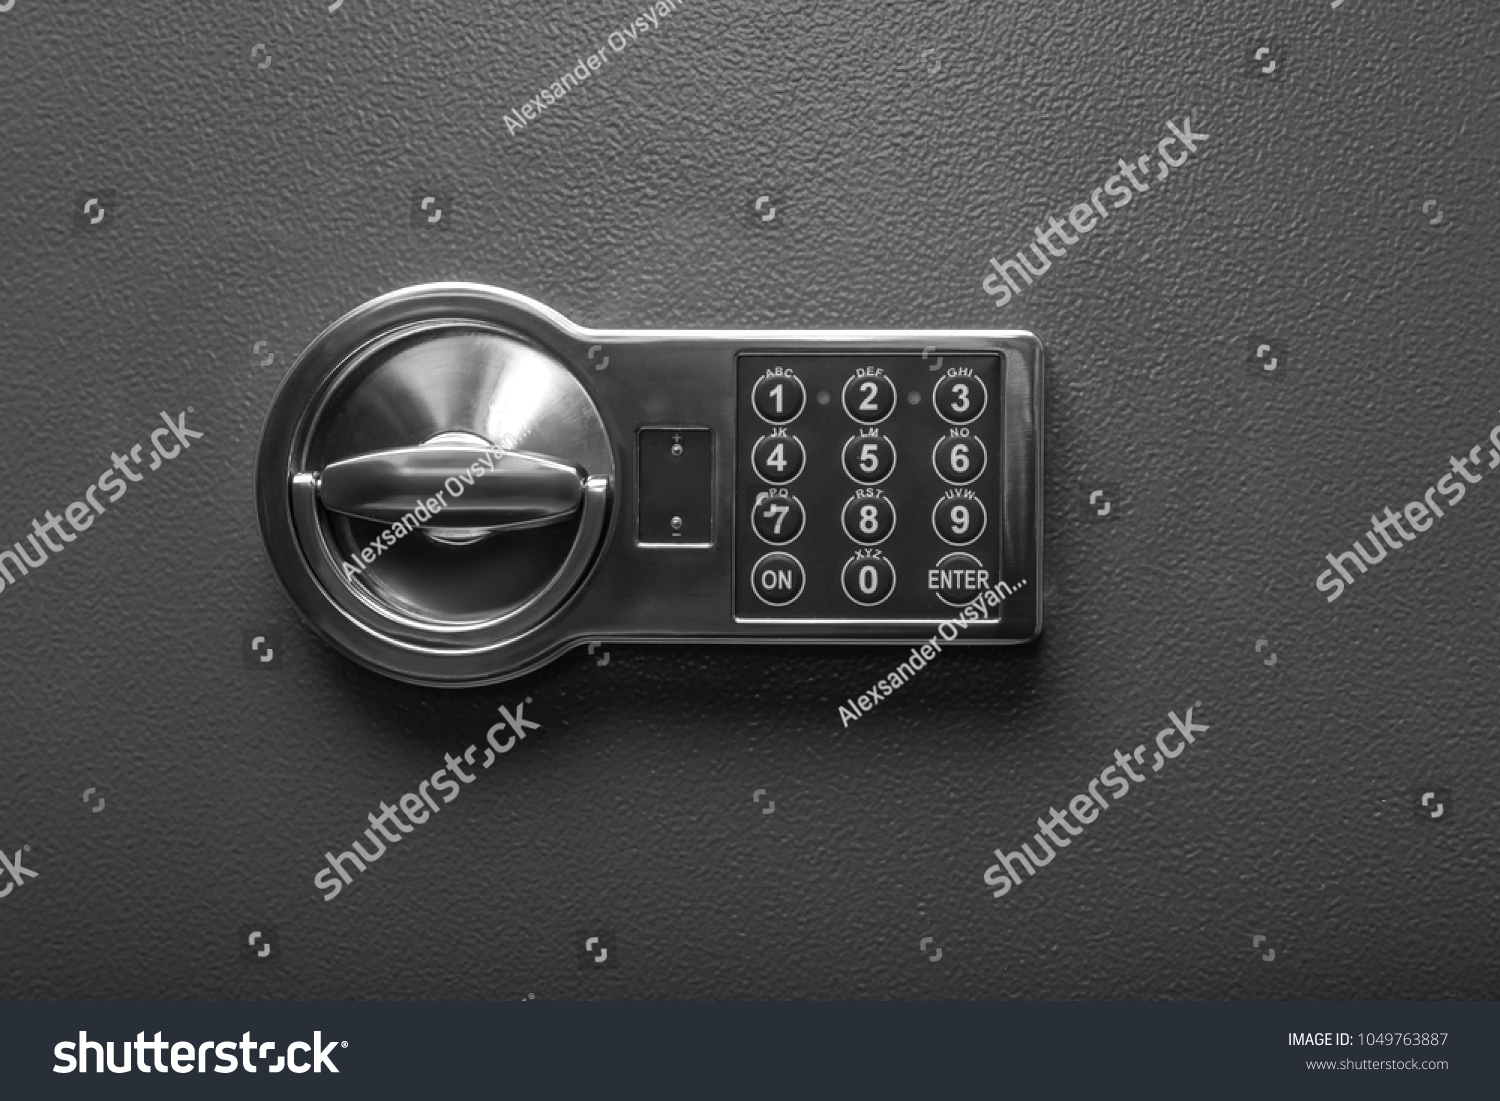 Code lock on the safe door. #1049763887